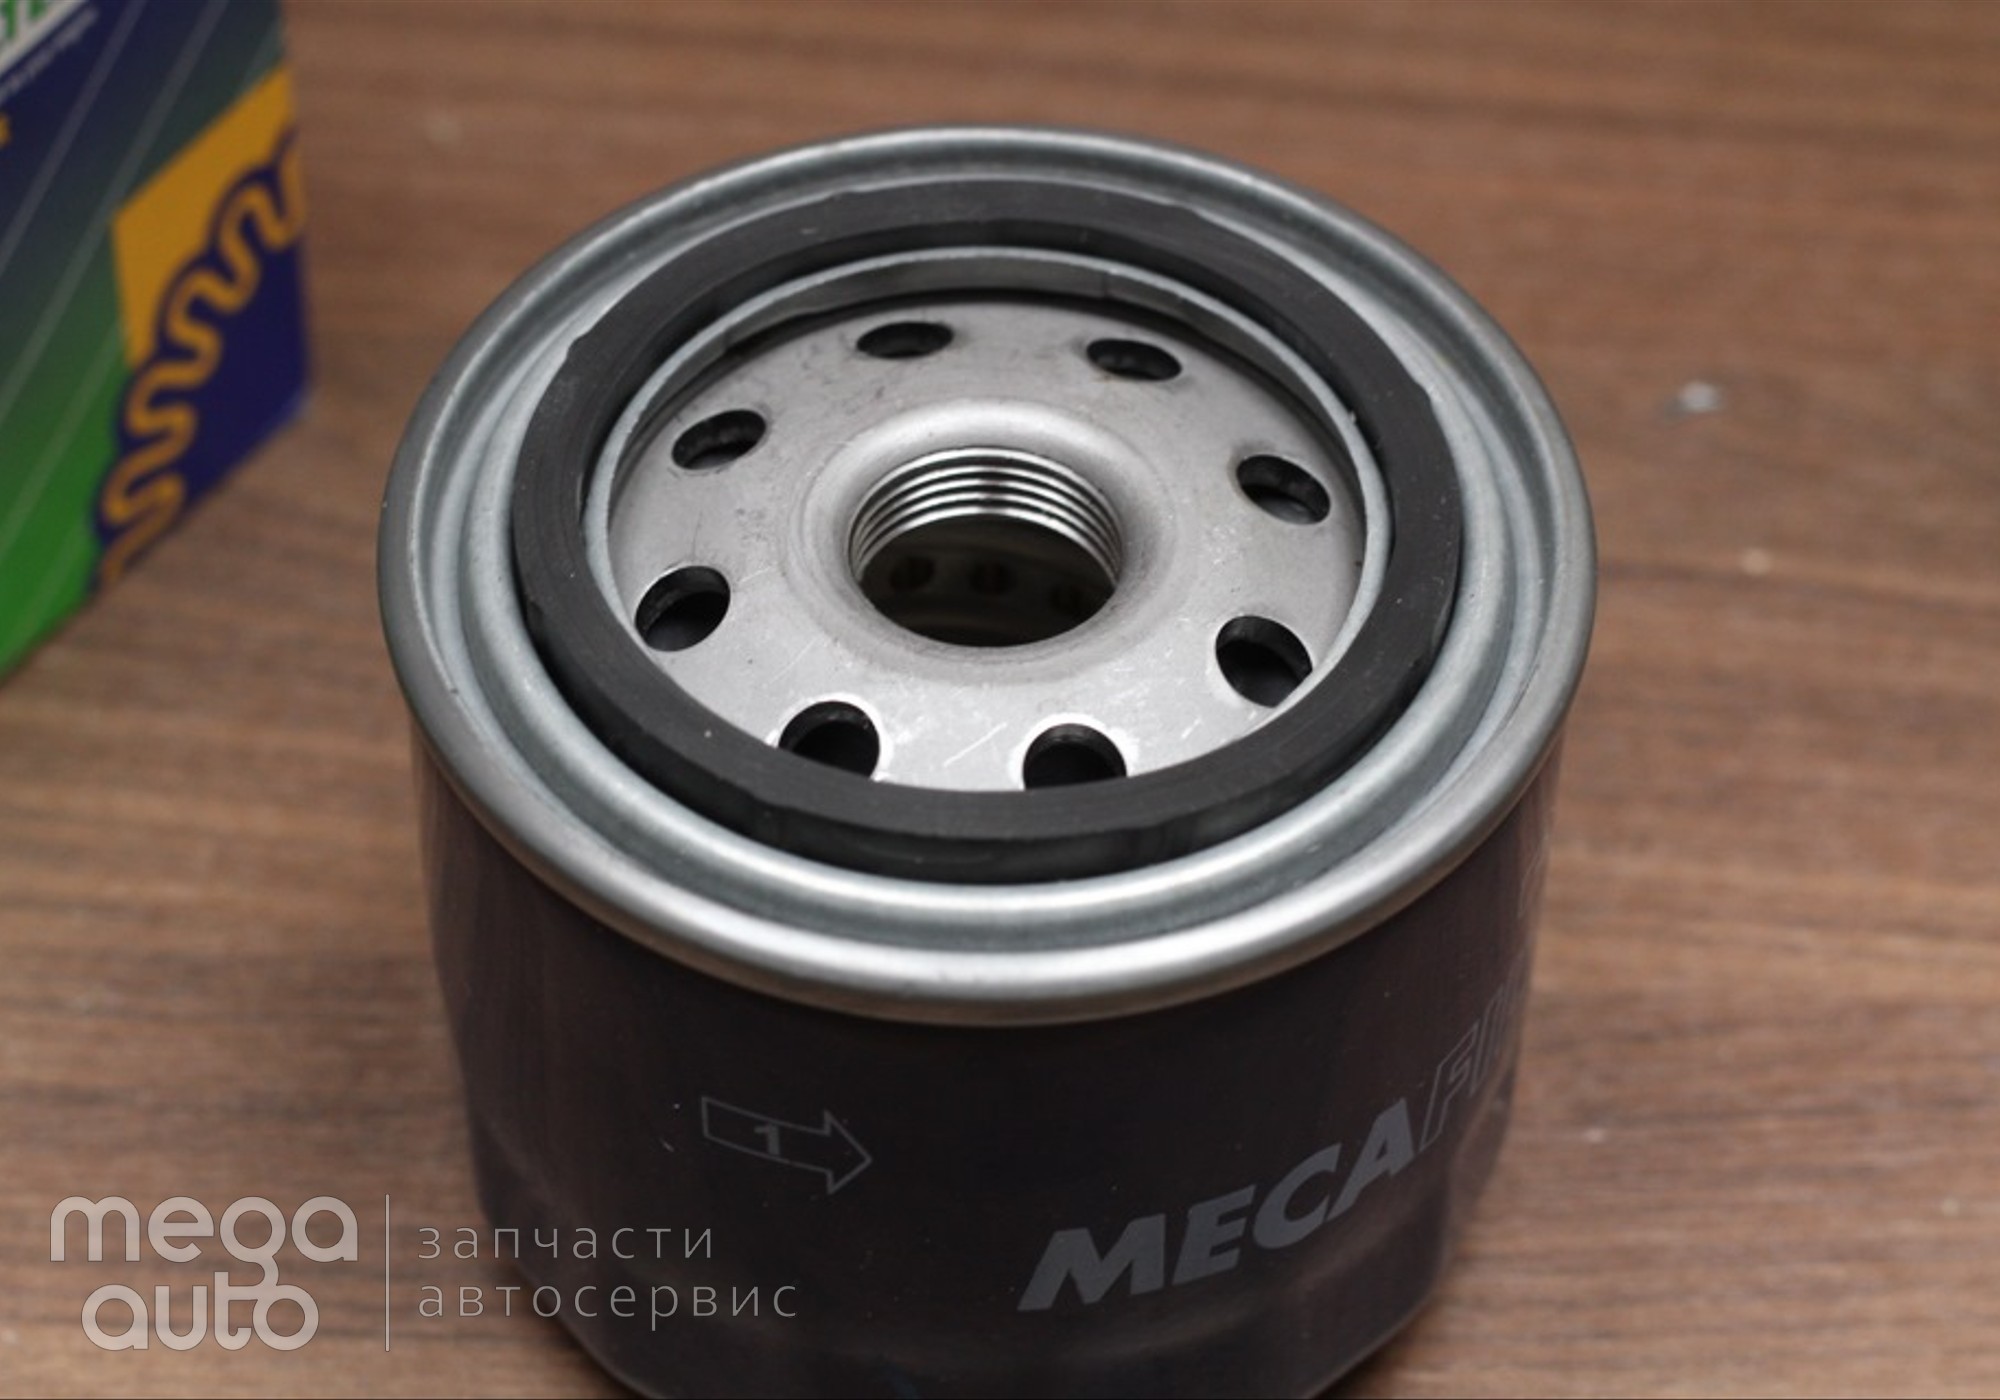 2630035530 Масляный фильтр хендай акцент( MecaFilter) для Mazda 626 GE (с 1991 по 1997)